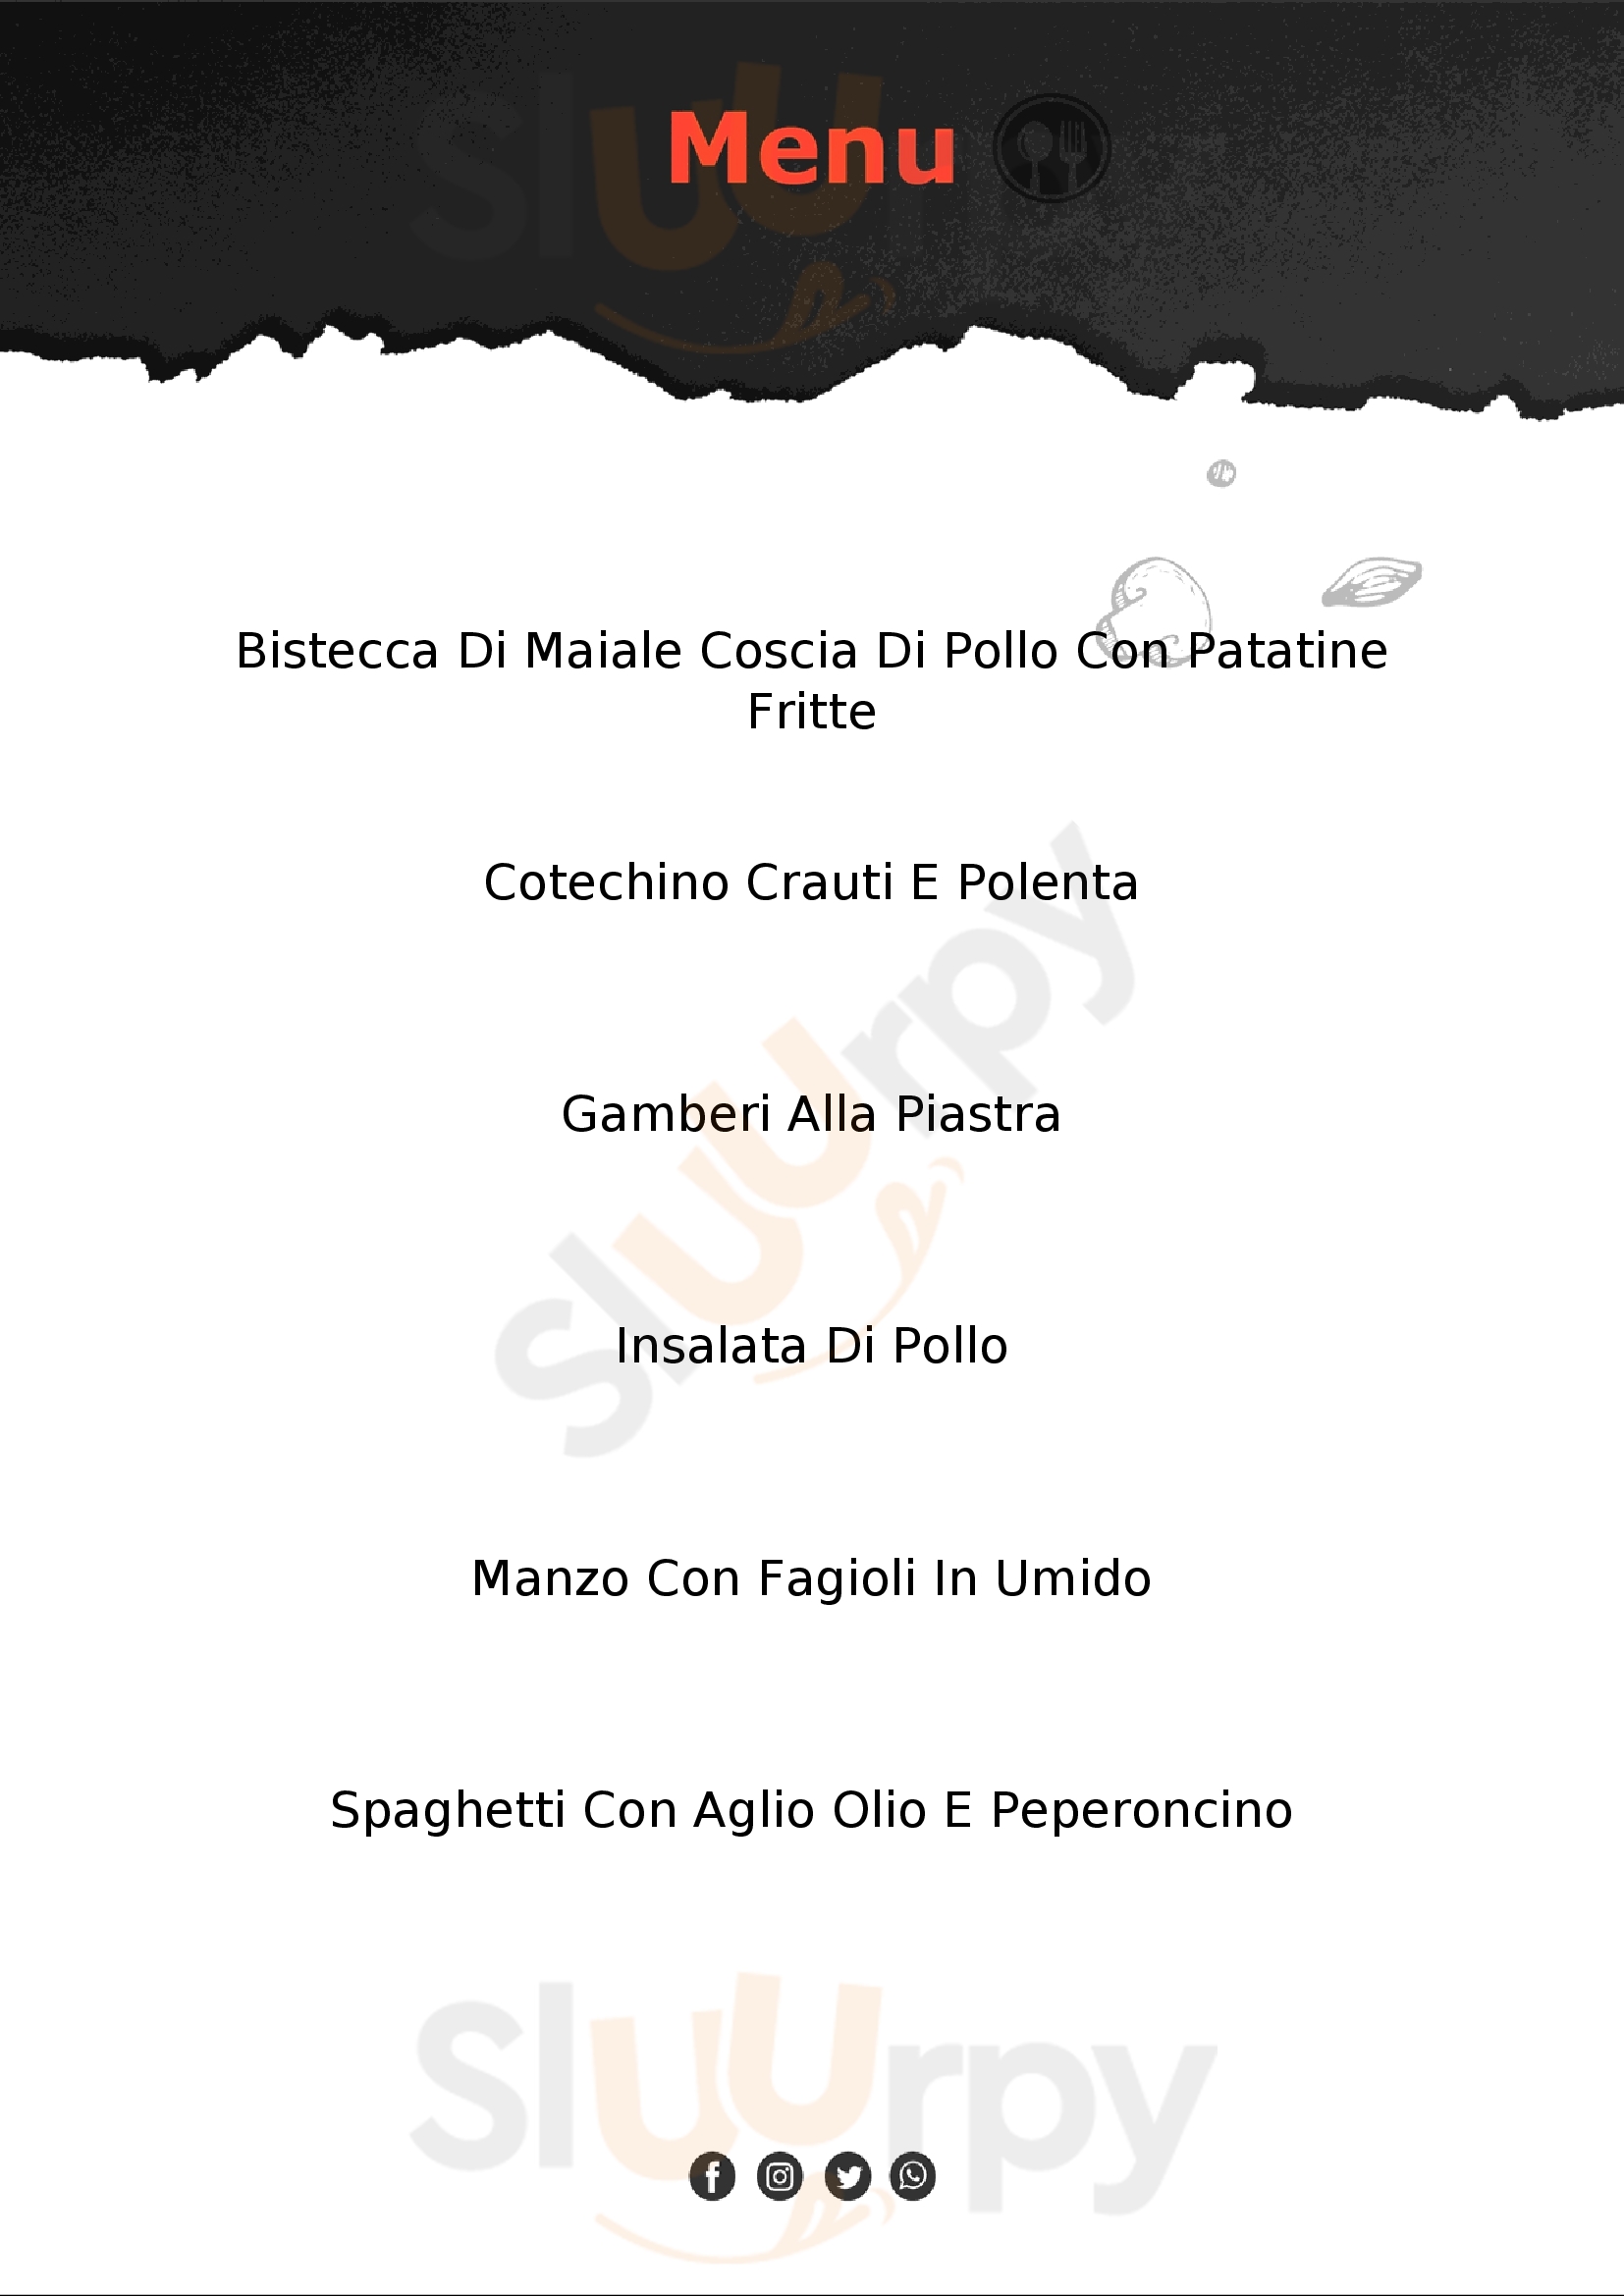 Velox Cafè Santorso menù 1 pagina